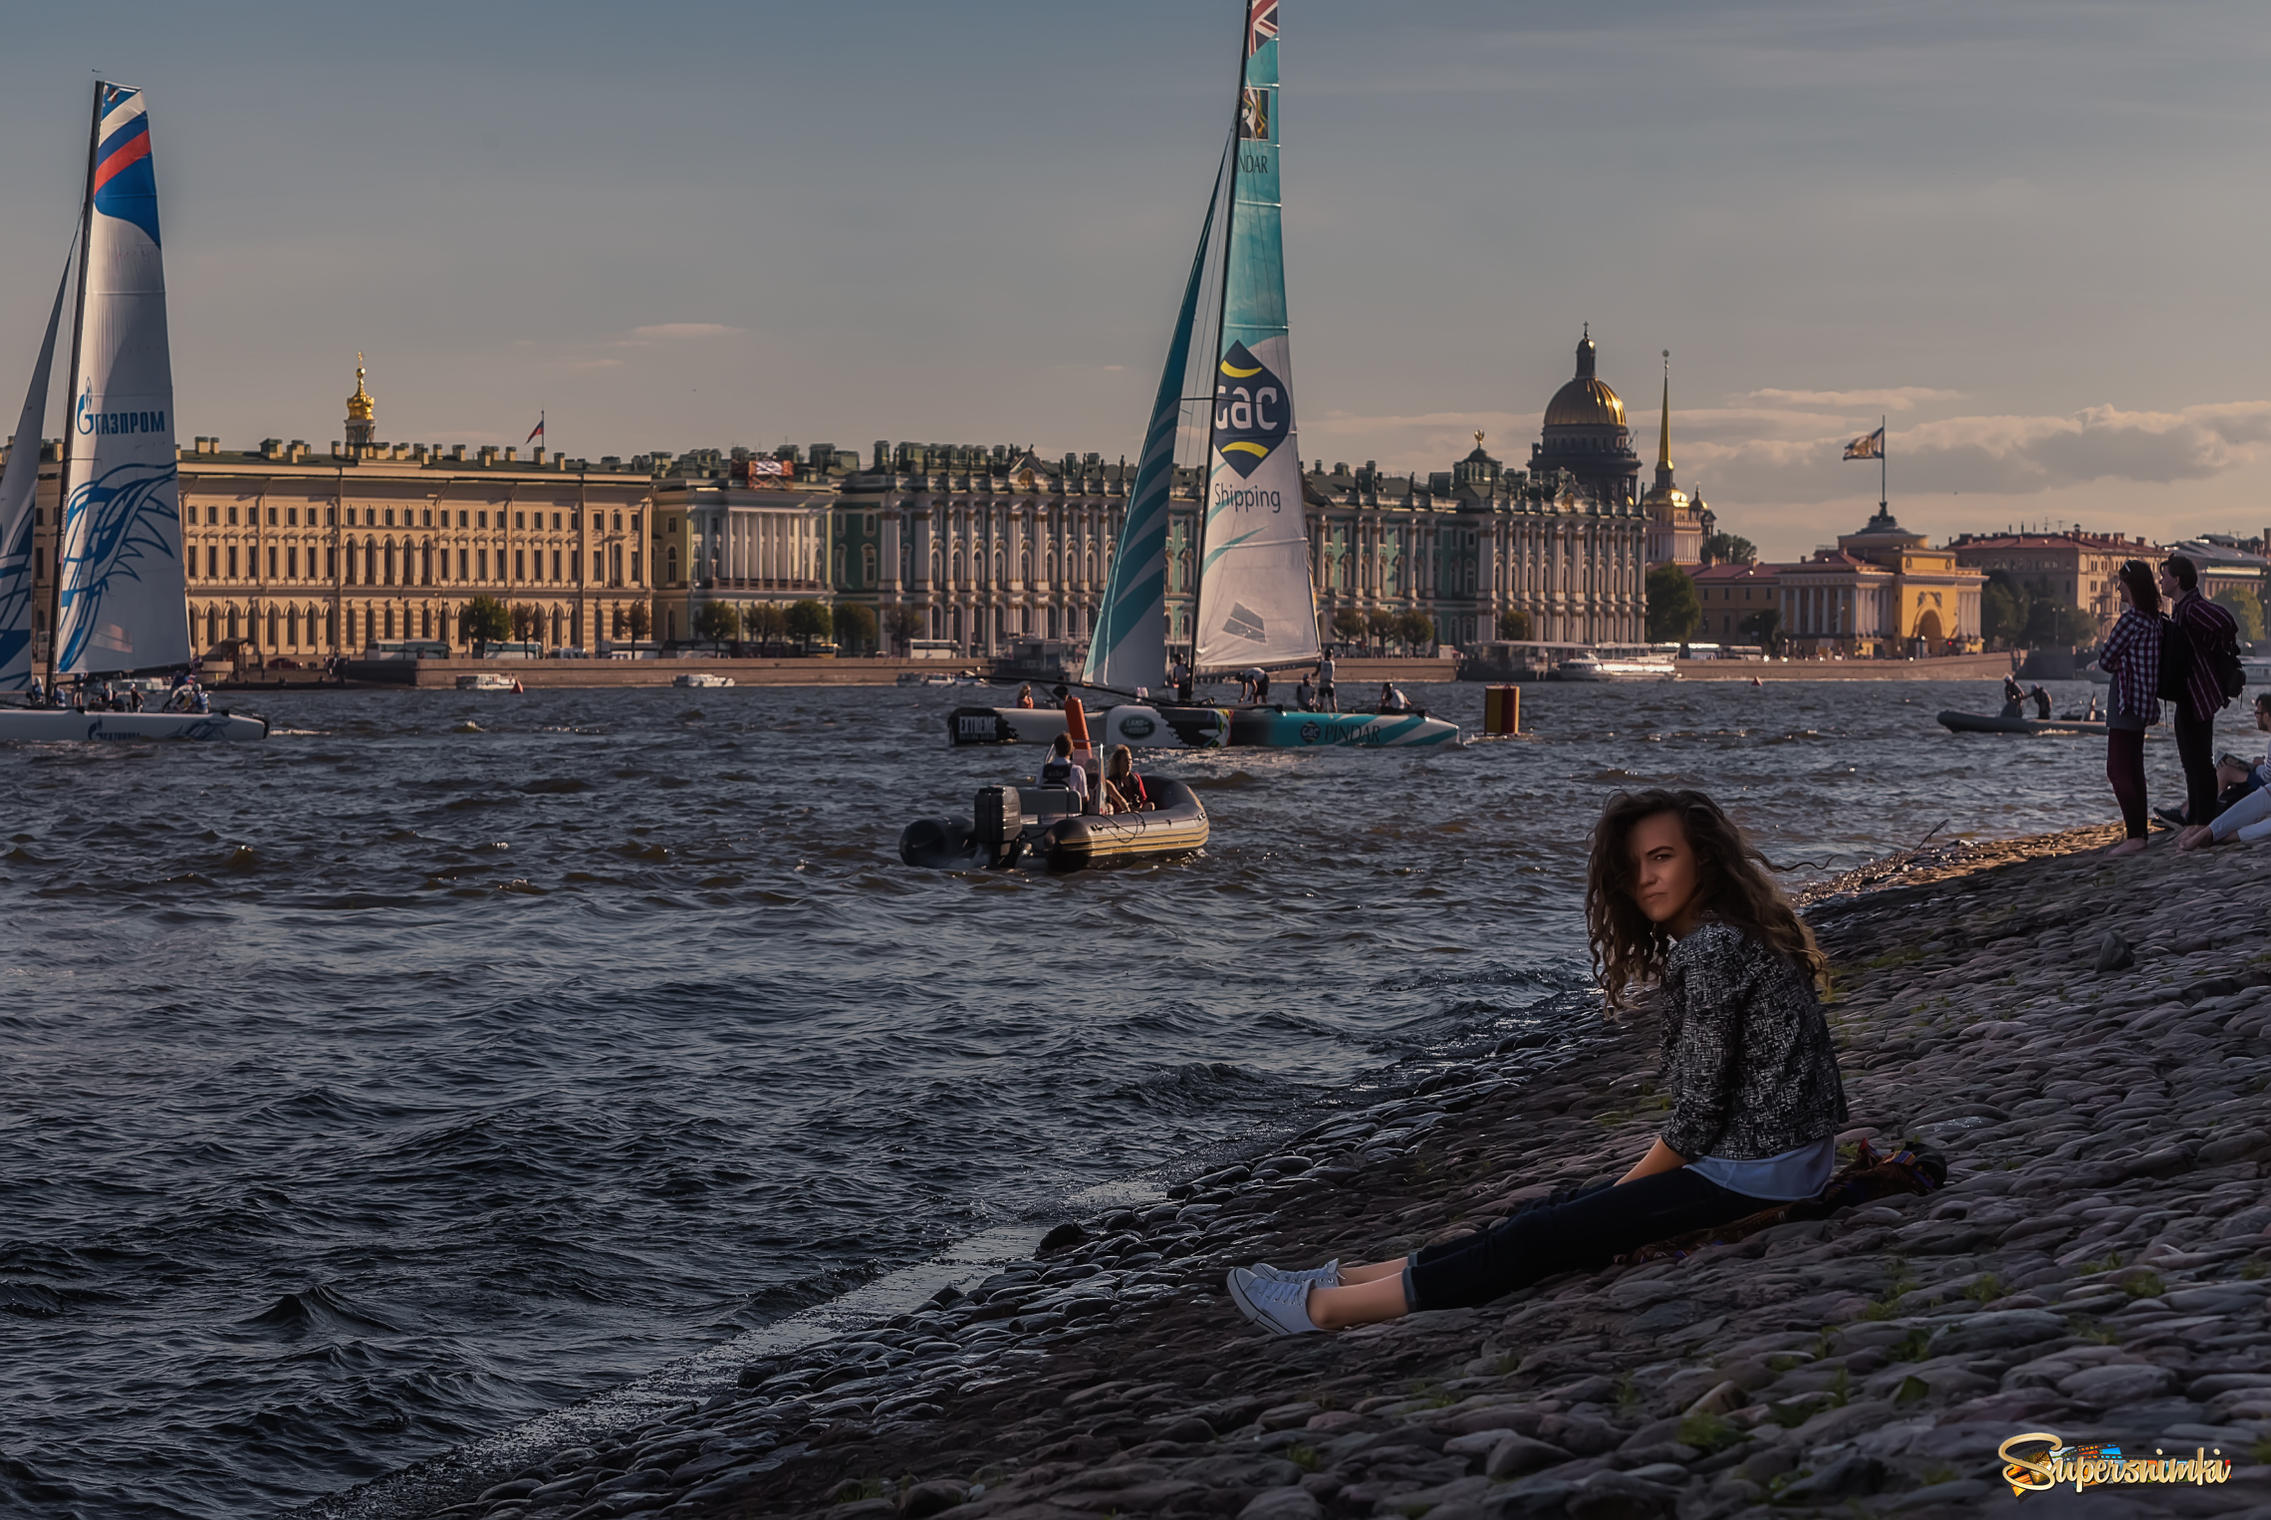 Море на месте петербурга. Санкт-Петербург лето 2022. Фотосессия в Санкт-Петербурге летом. Красивые места в Питере для фотосессии.